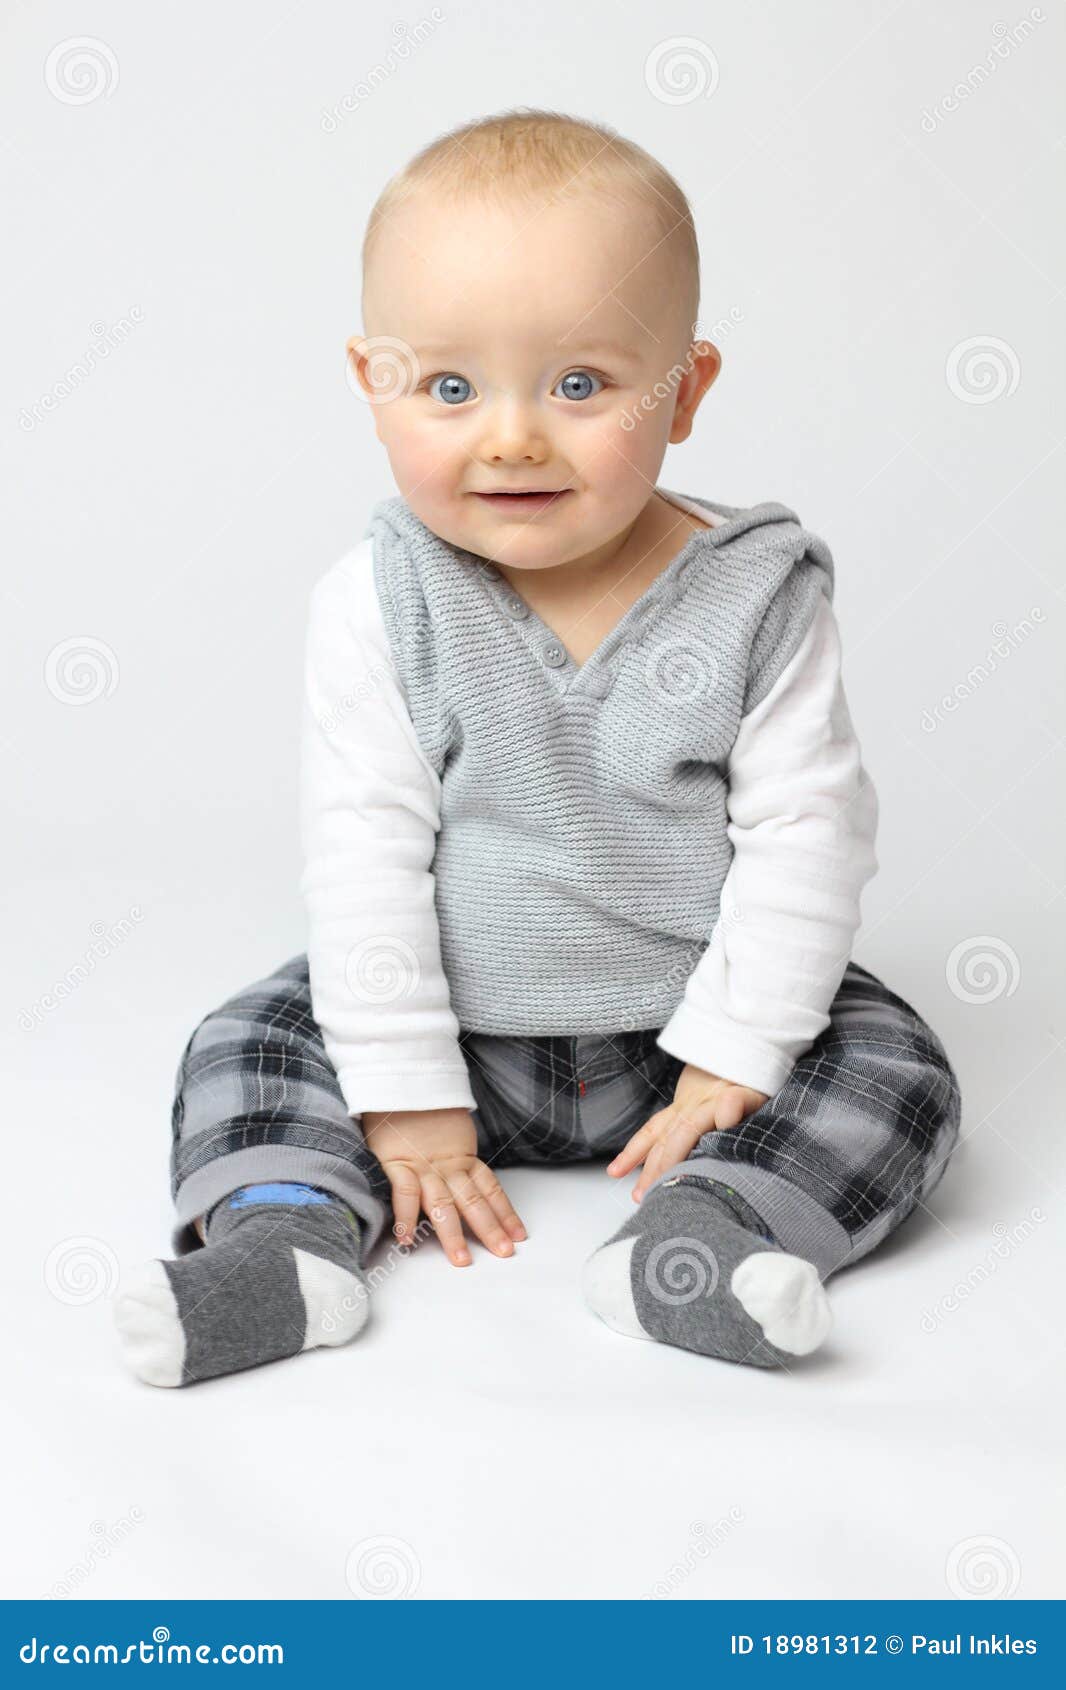 White Isolation of Baby stock photo. Image of boys, smile - 18981312